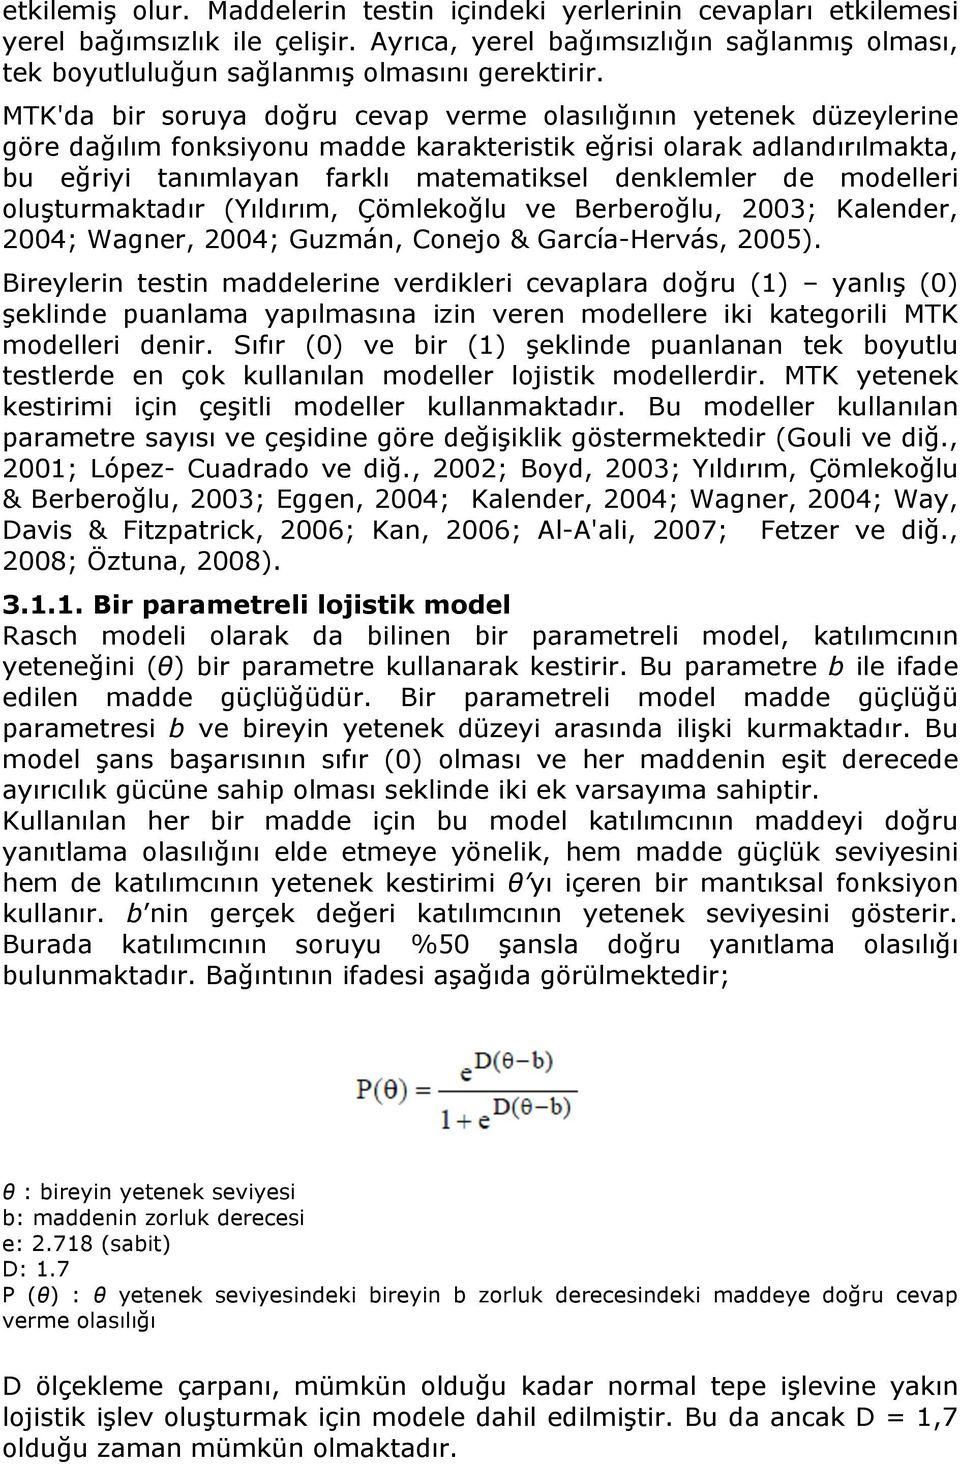 modelleri oluşturmaktadır (Yıldırım, Çömlekoğlu ve Berberoğlu, 2003; Kalender, 2004; Wagner, 2004; Guzmán, Conejo & García-Hervás, 2005).